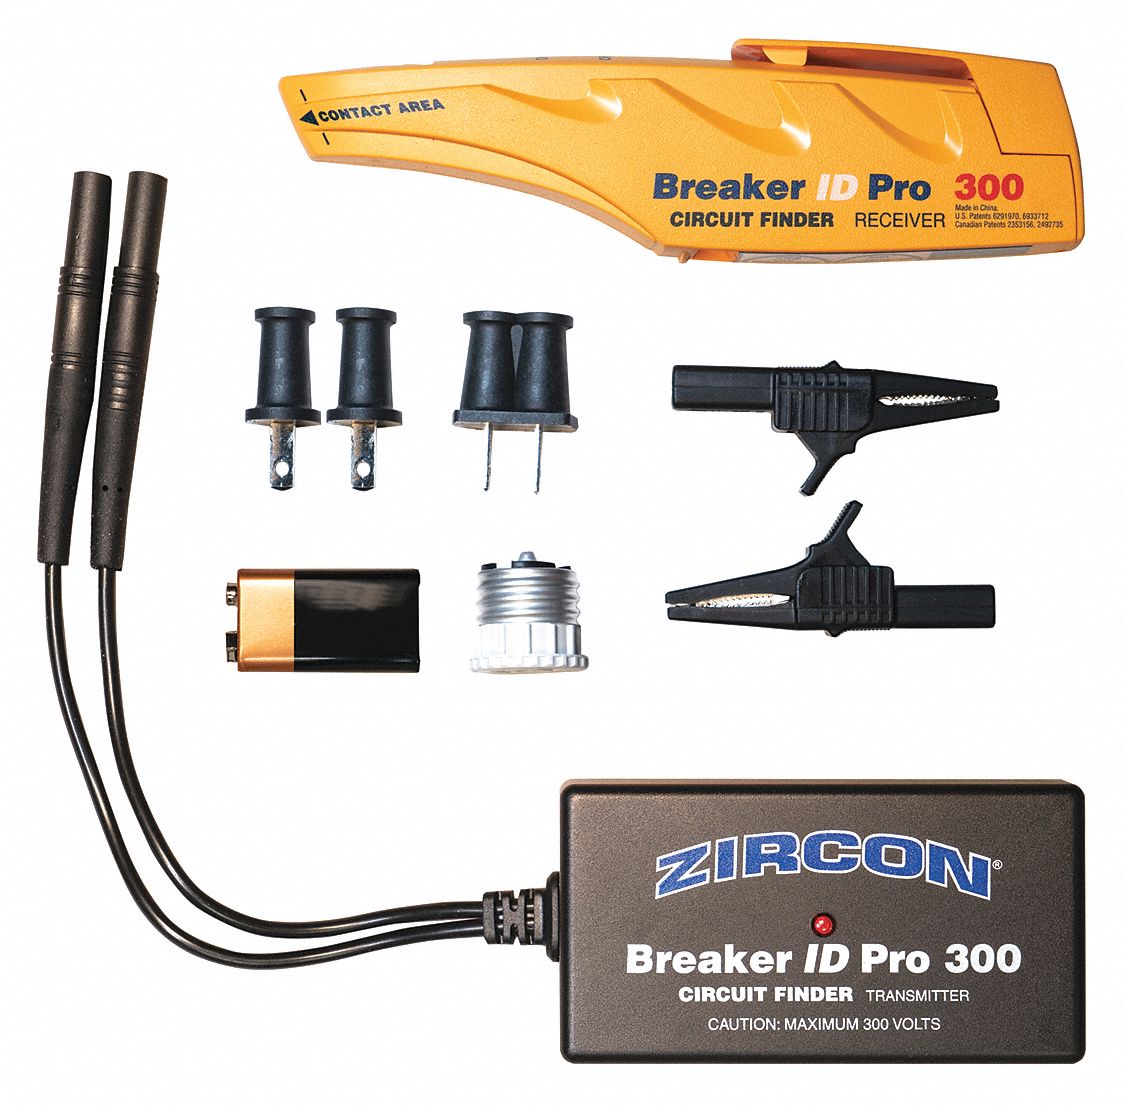 Circuit Breaker Finder: 80 to 300V AC, 71263 ZIRCON, Circuit Breaker Finders, 71263 ZIRCON